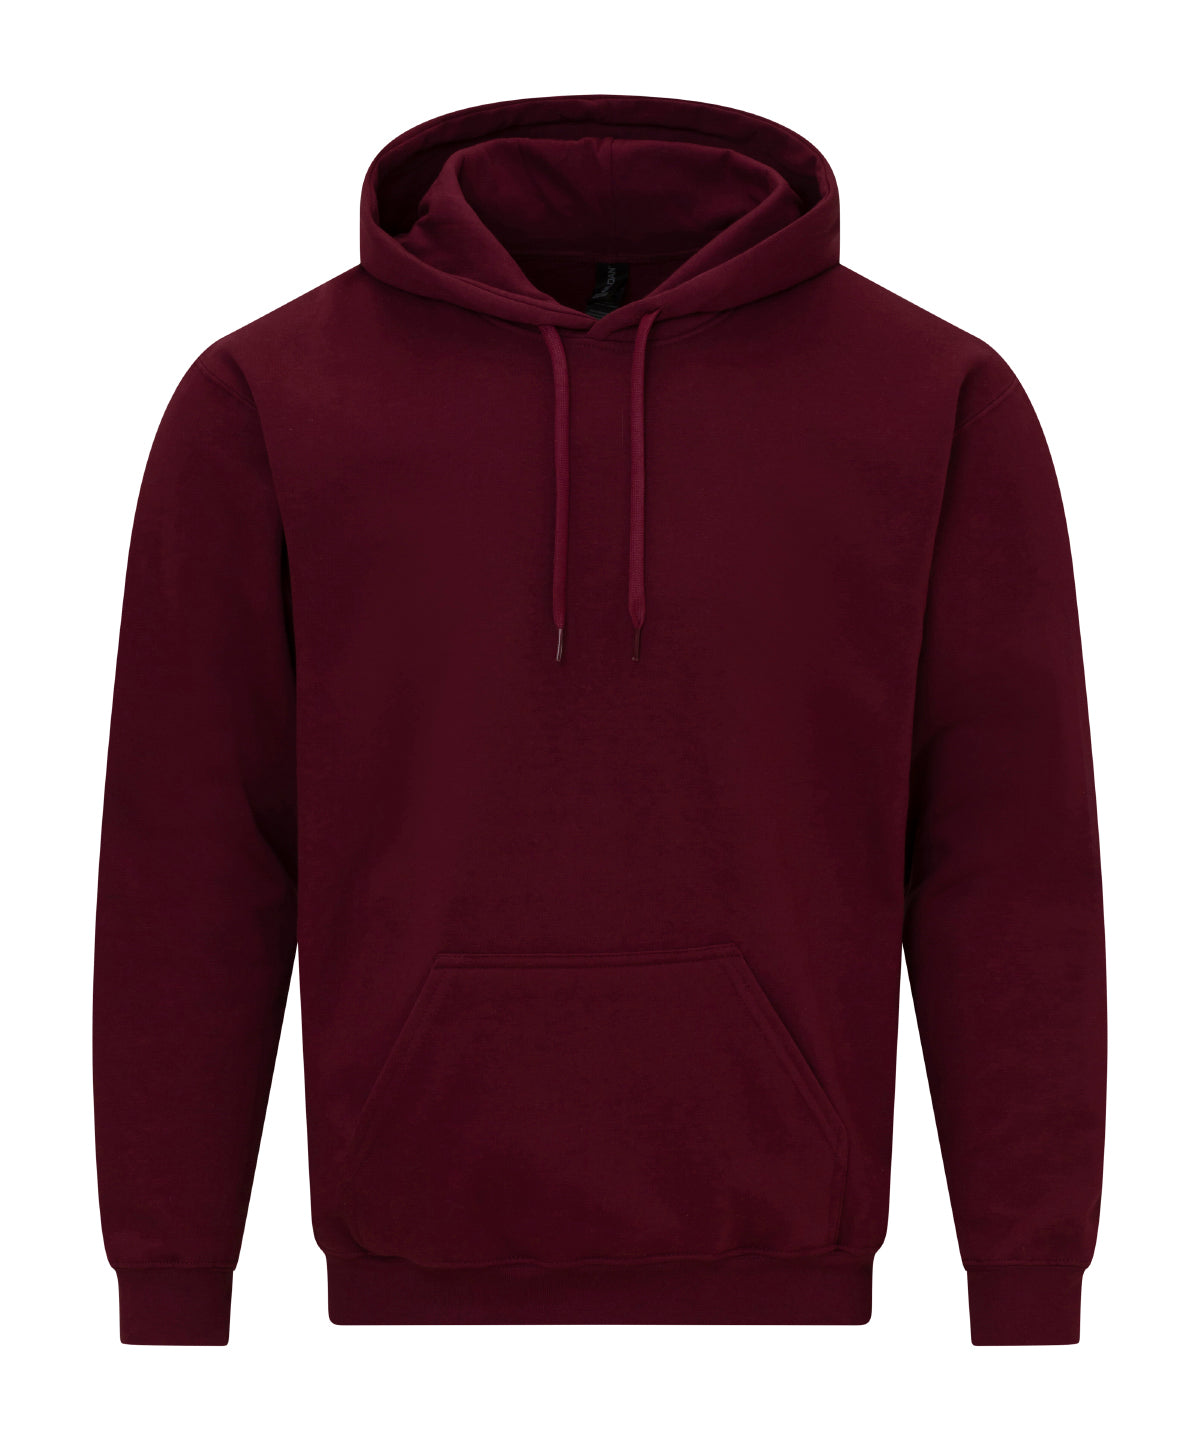 Personalised Hoodies - Black Gildan Softstyle™ midweight fleece adult hoodie